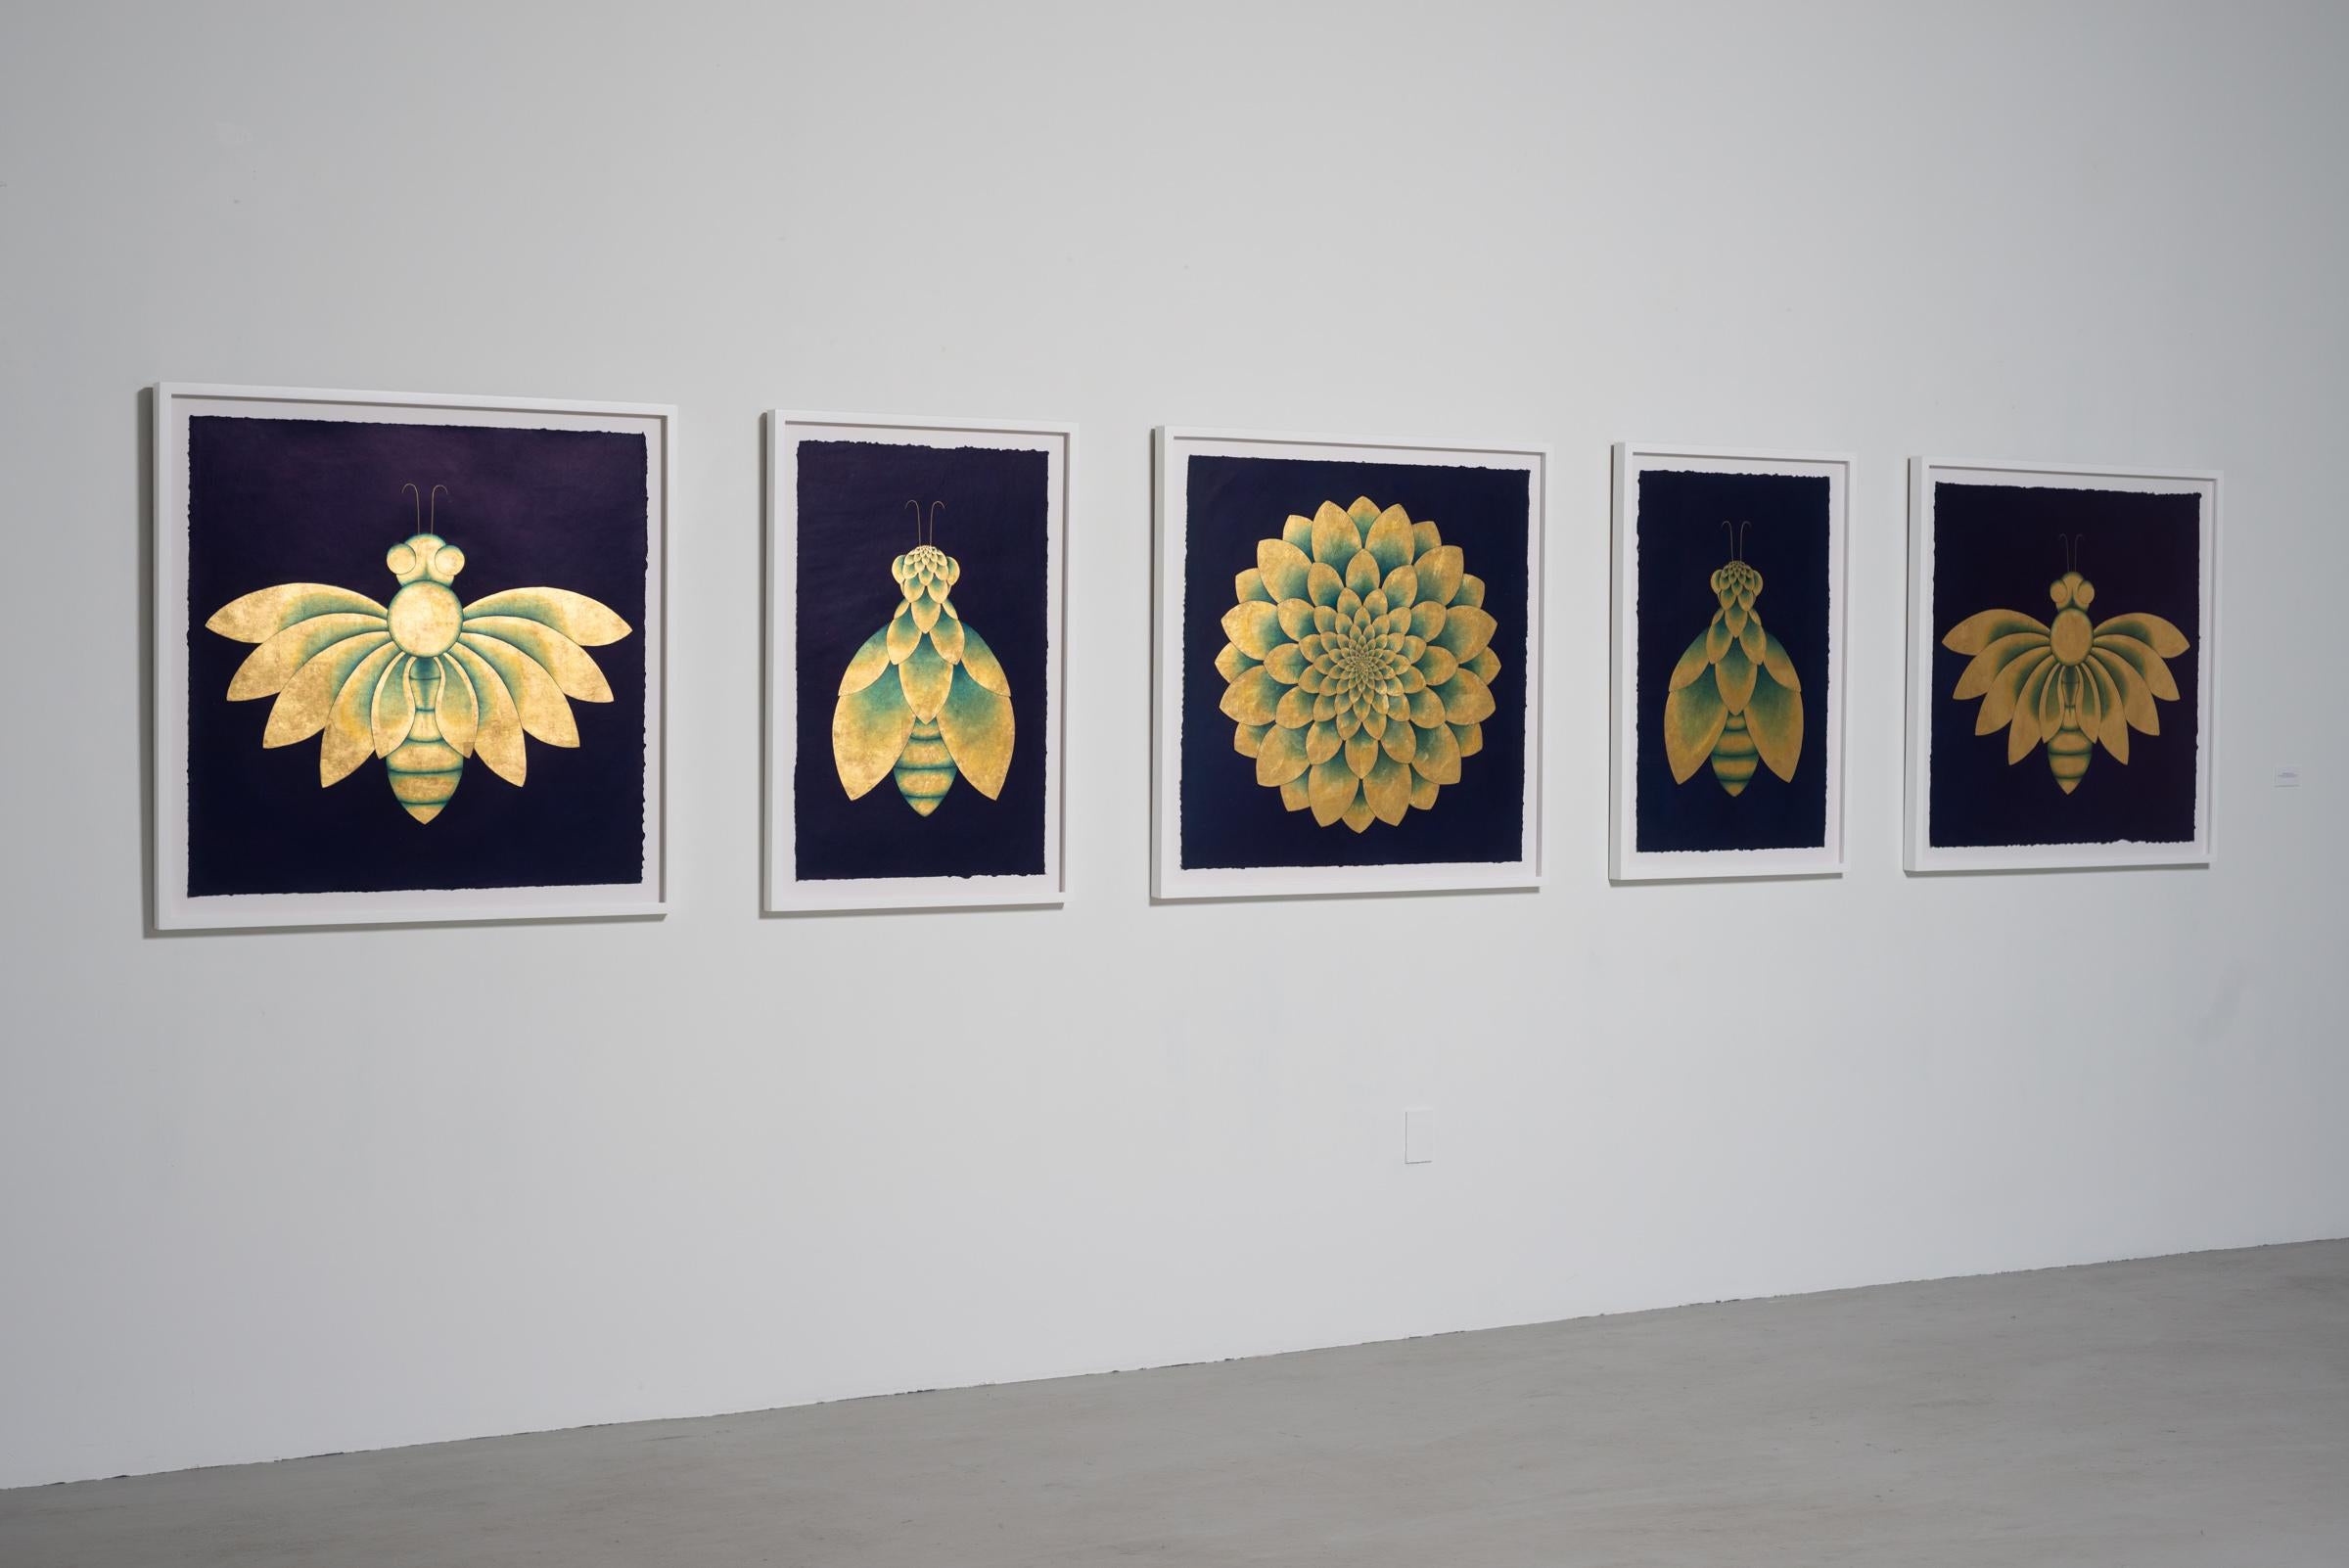 Olivia Fraser
Métamorphose, 2021-2022
Pigment, gomme arabique et feuille d'or sur papier fait main
35.25 x 150.25 pouces
89.53 x 381.63 cm.
OF038

Olivia Fraser (née en 1965 à Londres) est une artiste basée à Delhi, connue pour ses peintures